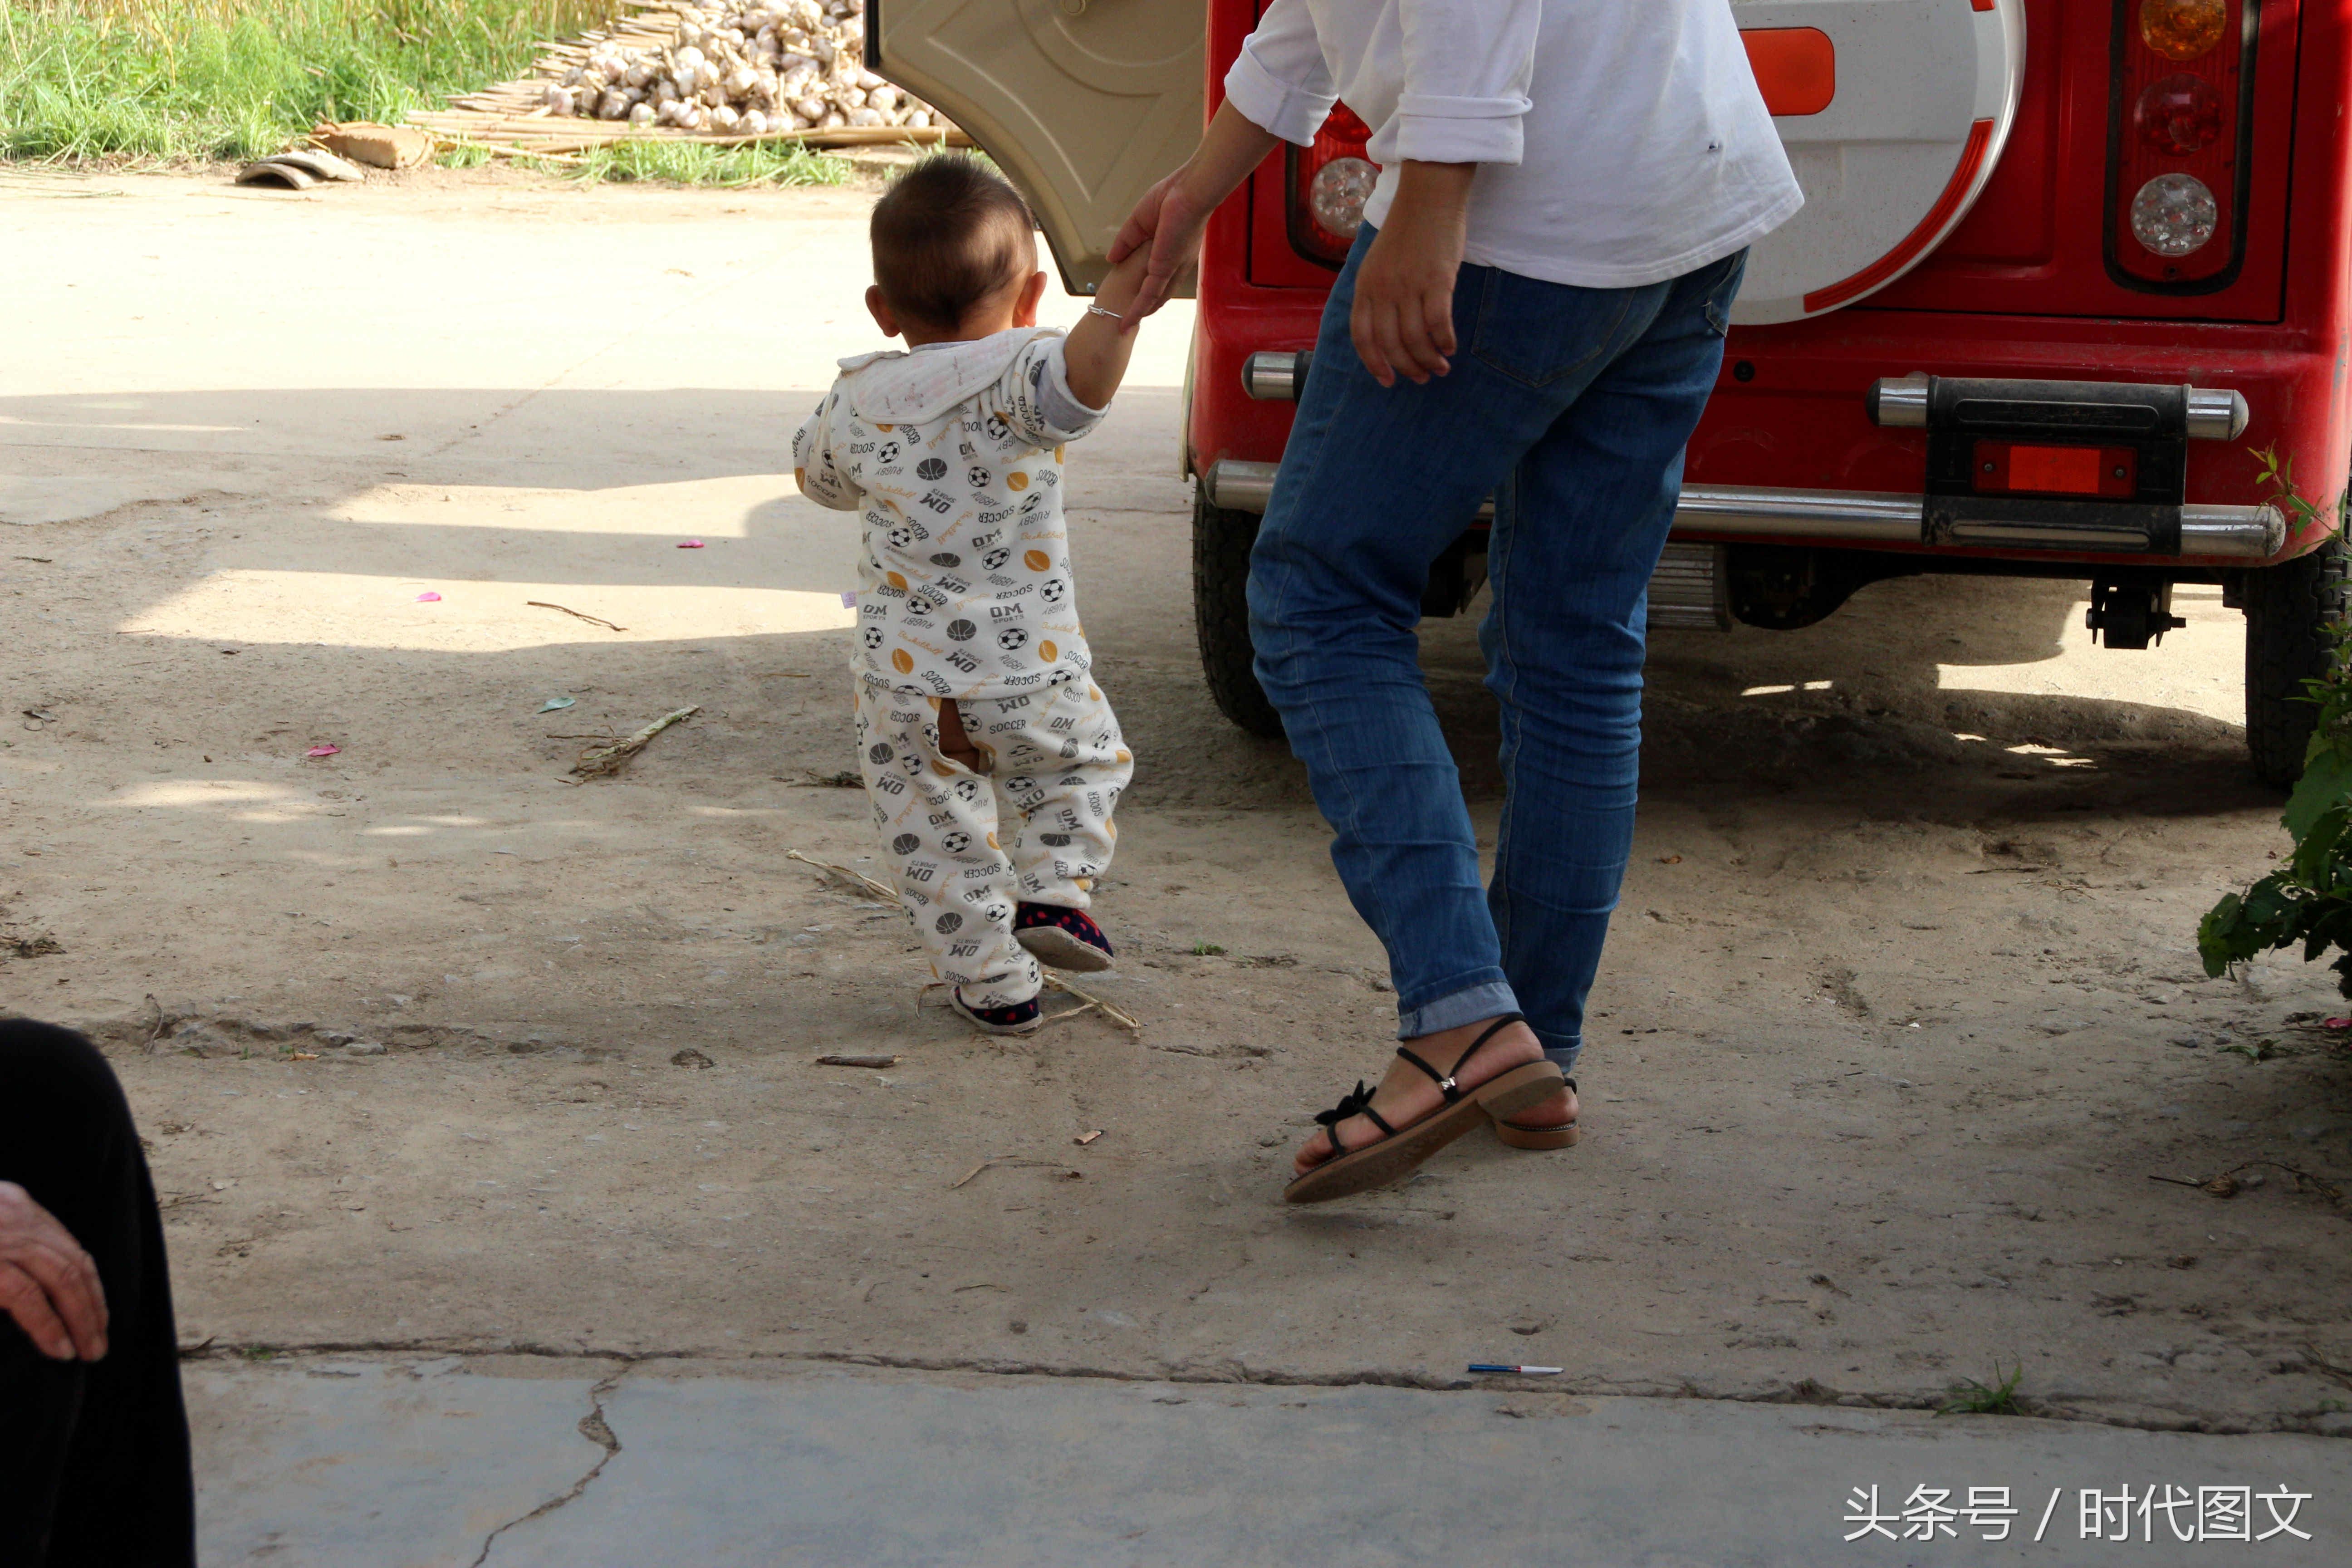 孩子学走路时,农村老人说要往两脚之间剁三刀